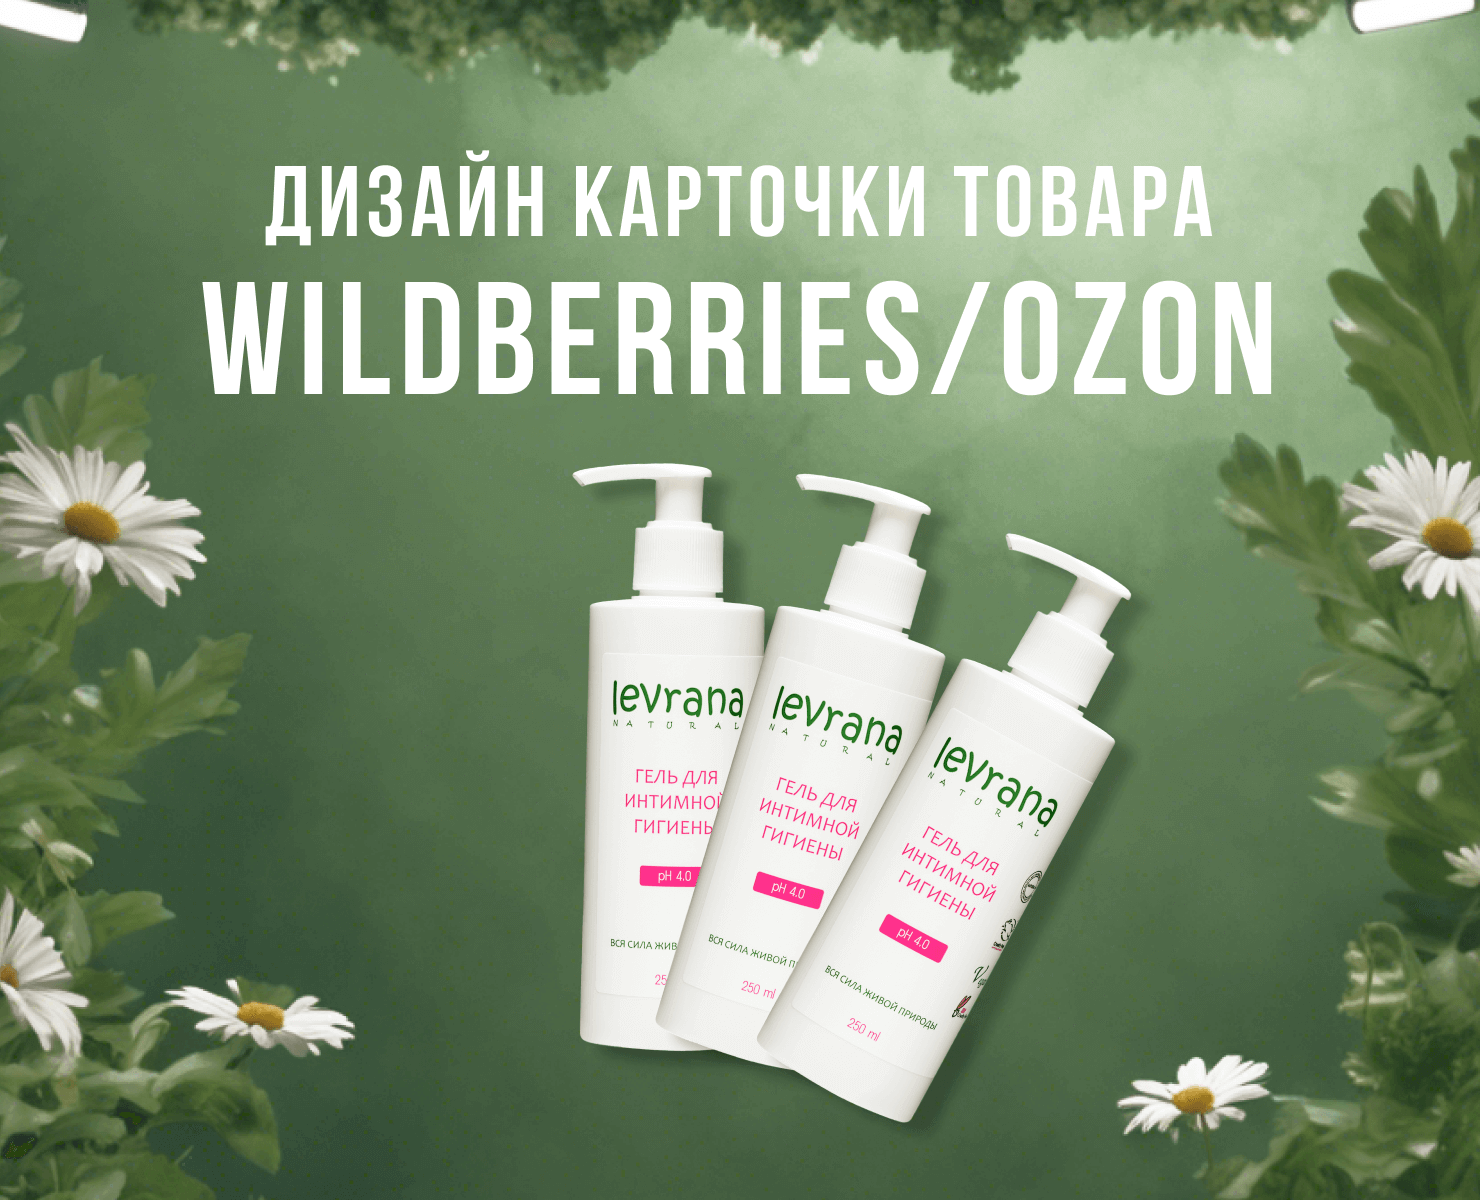 Инфографика Wildberries, Ozon — Графика, Маркетинг на Dprofile